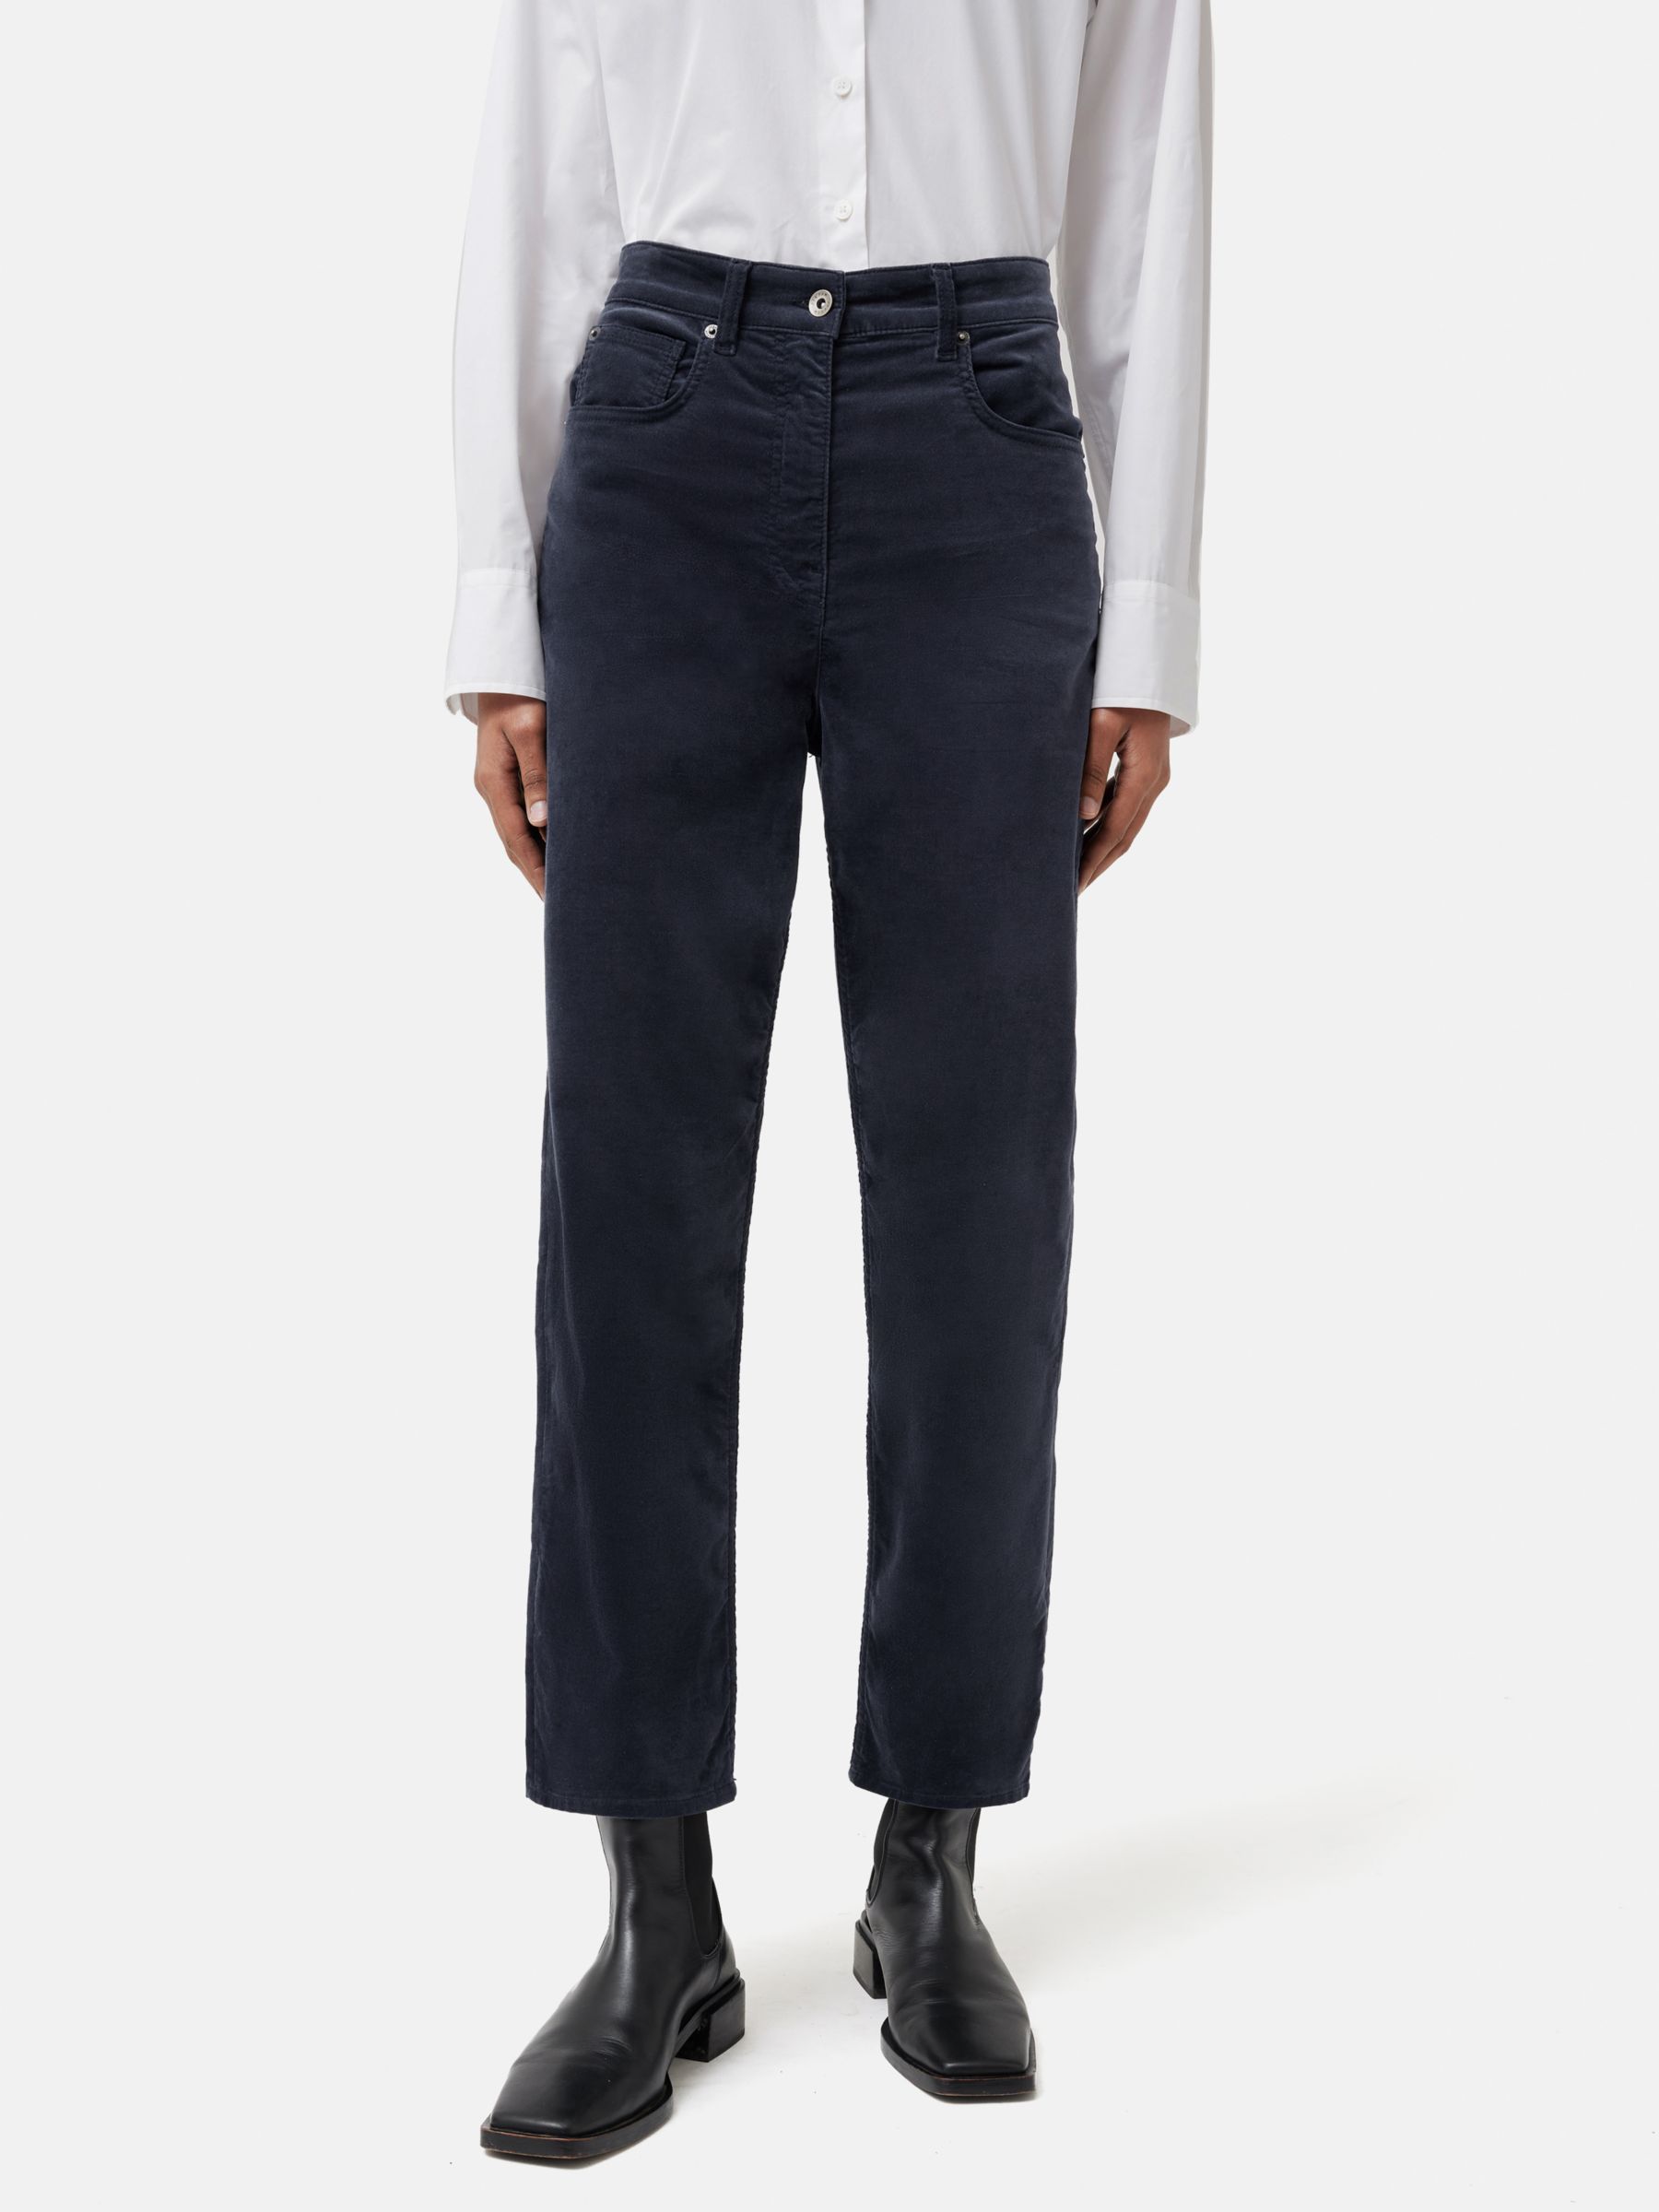 Jigsaw Delmont Velvet Jeans, Grey at John Lewis & Partners